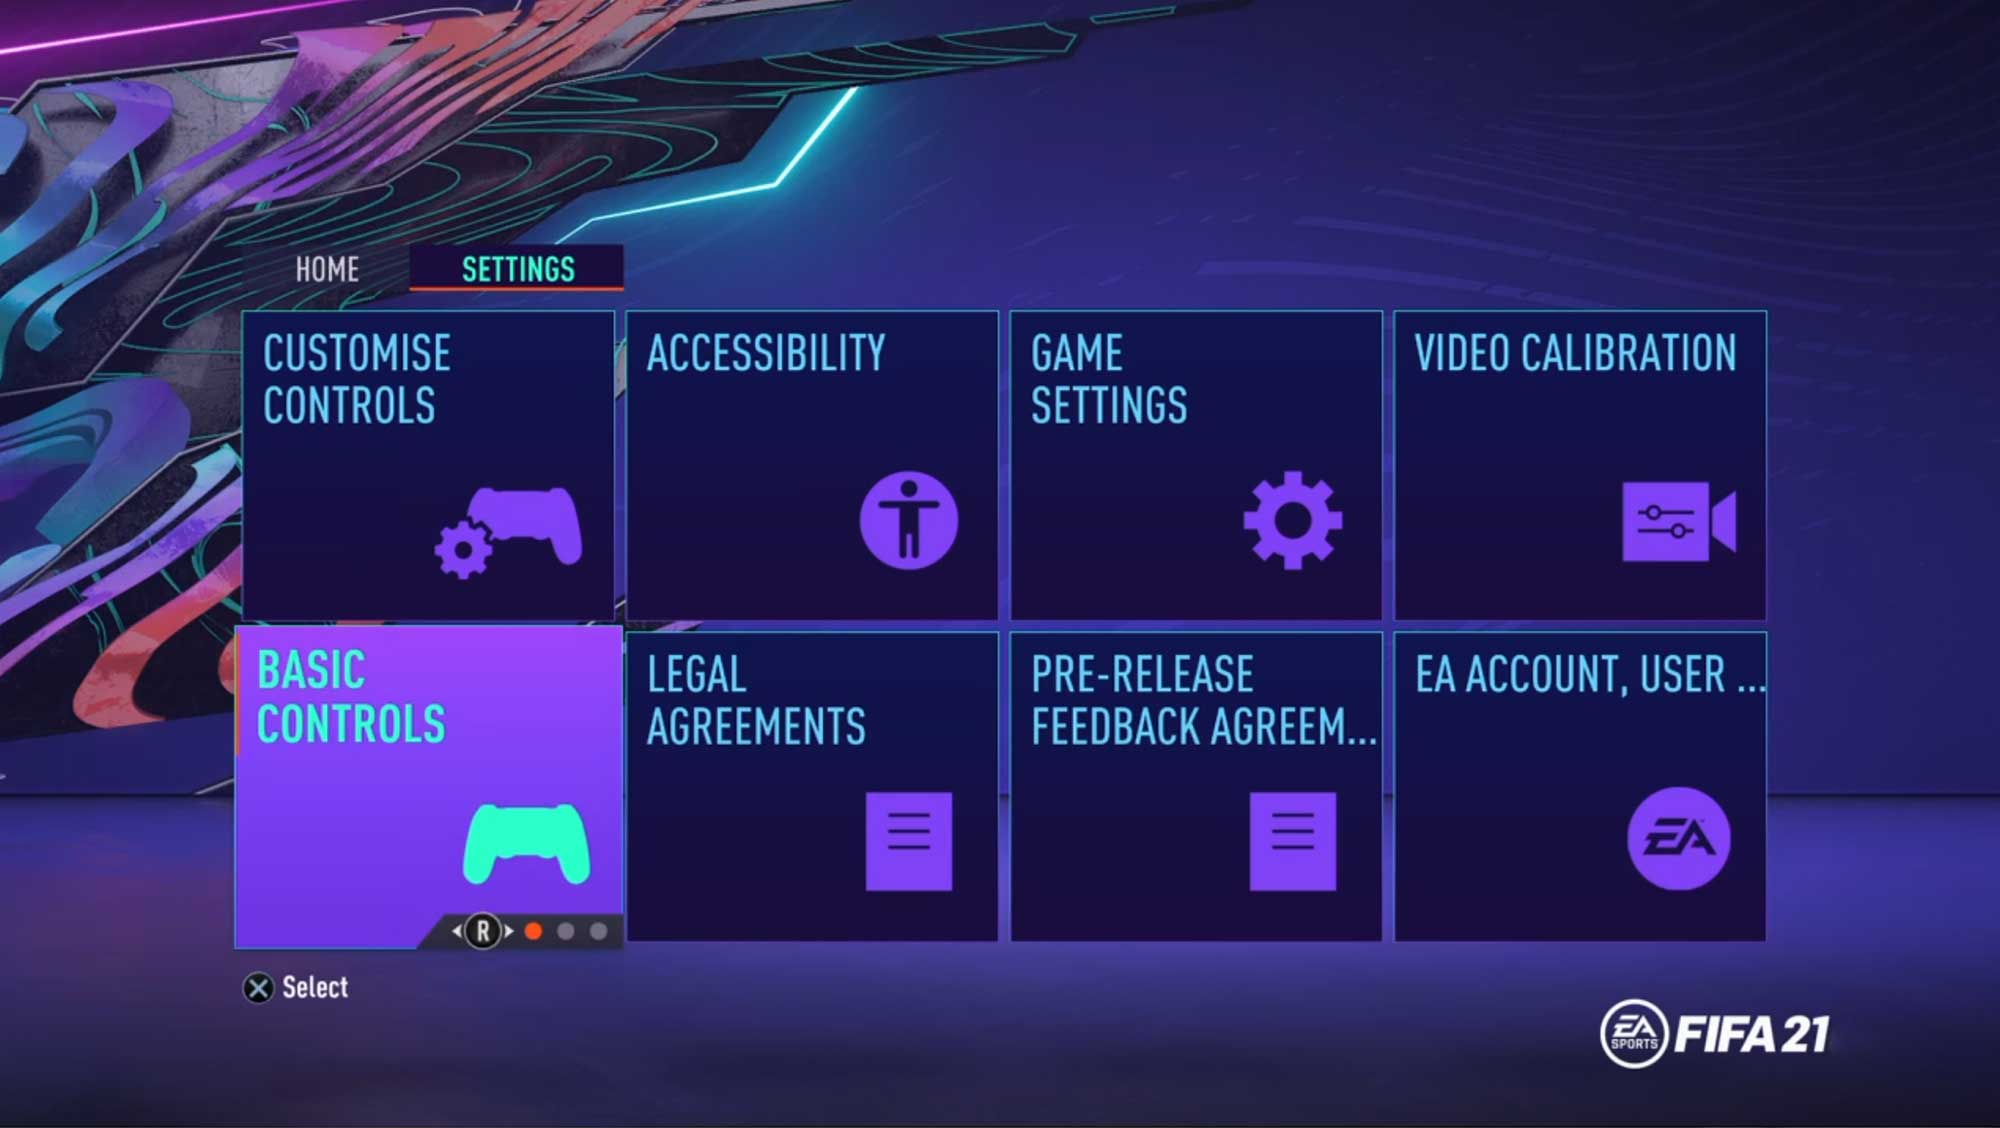 FIFA 21: Configurações mínimas e recomendadas para jogar no PC